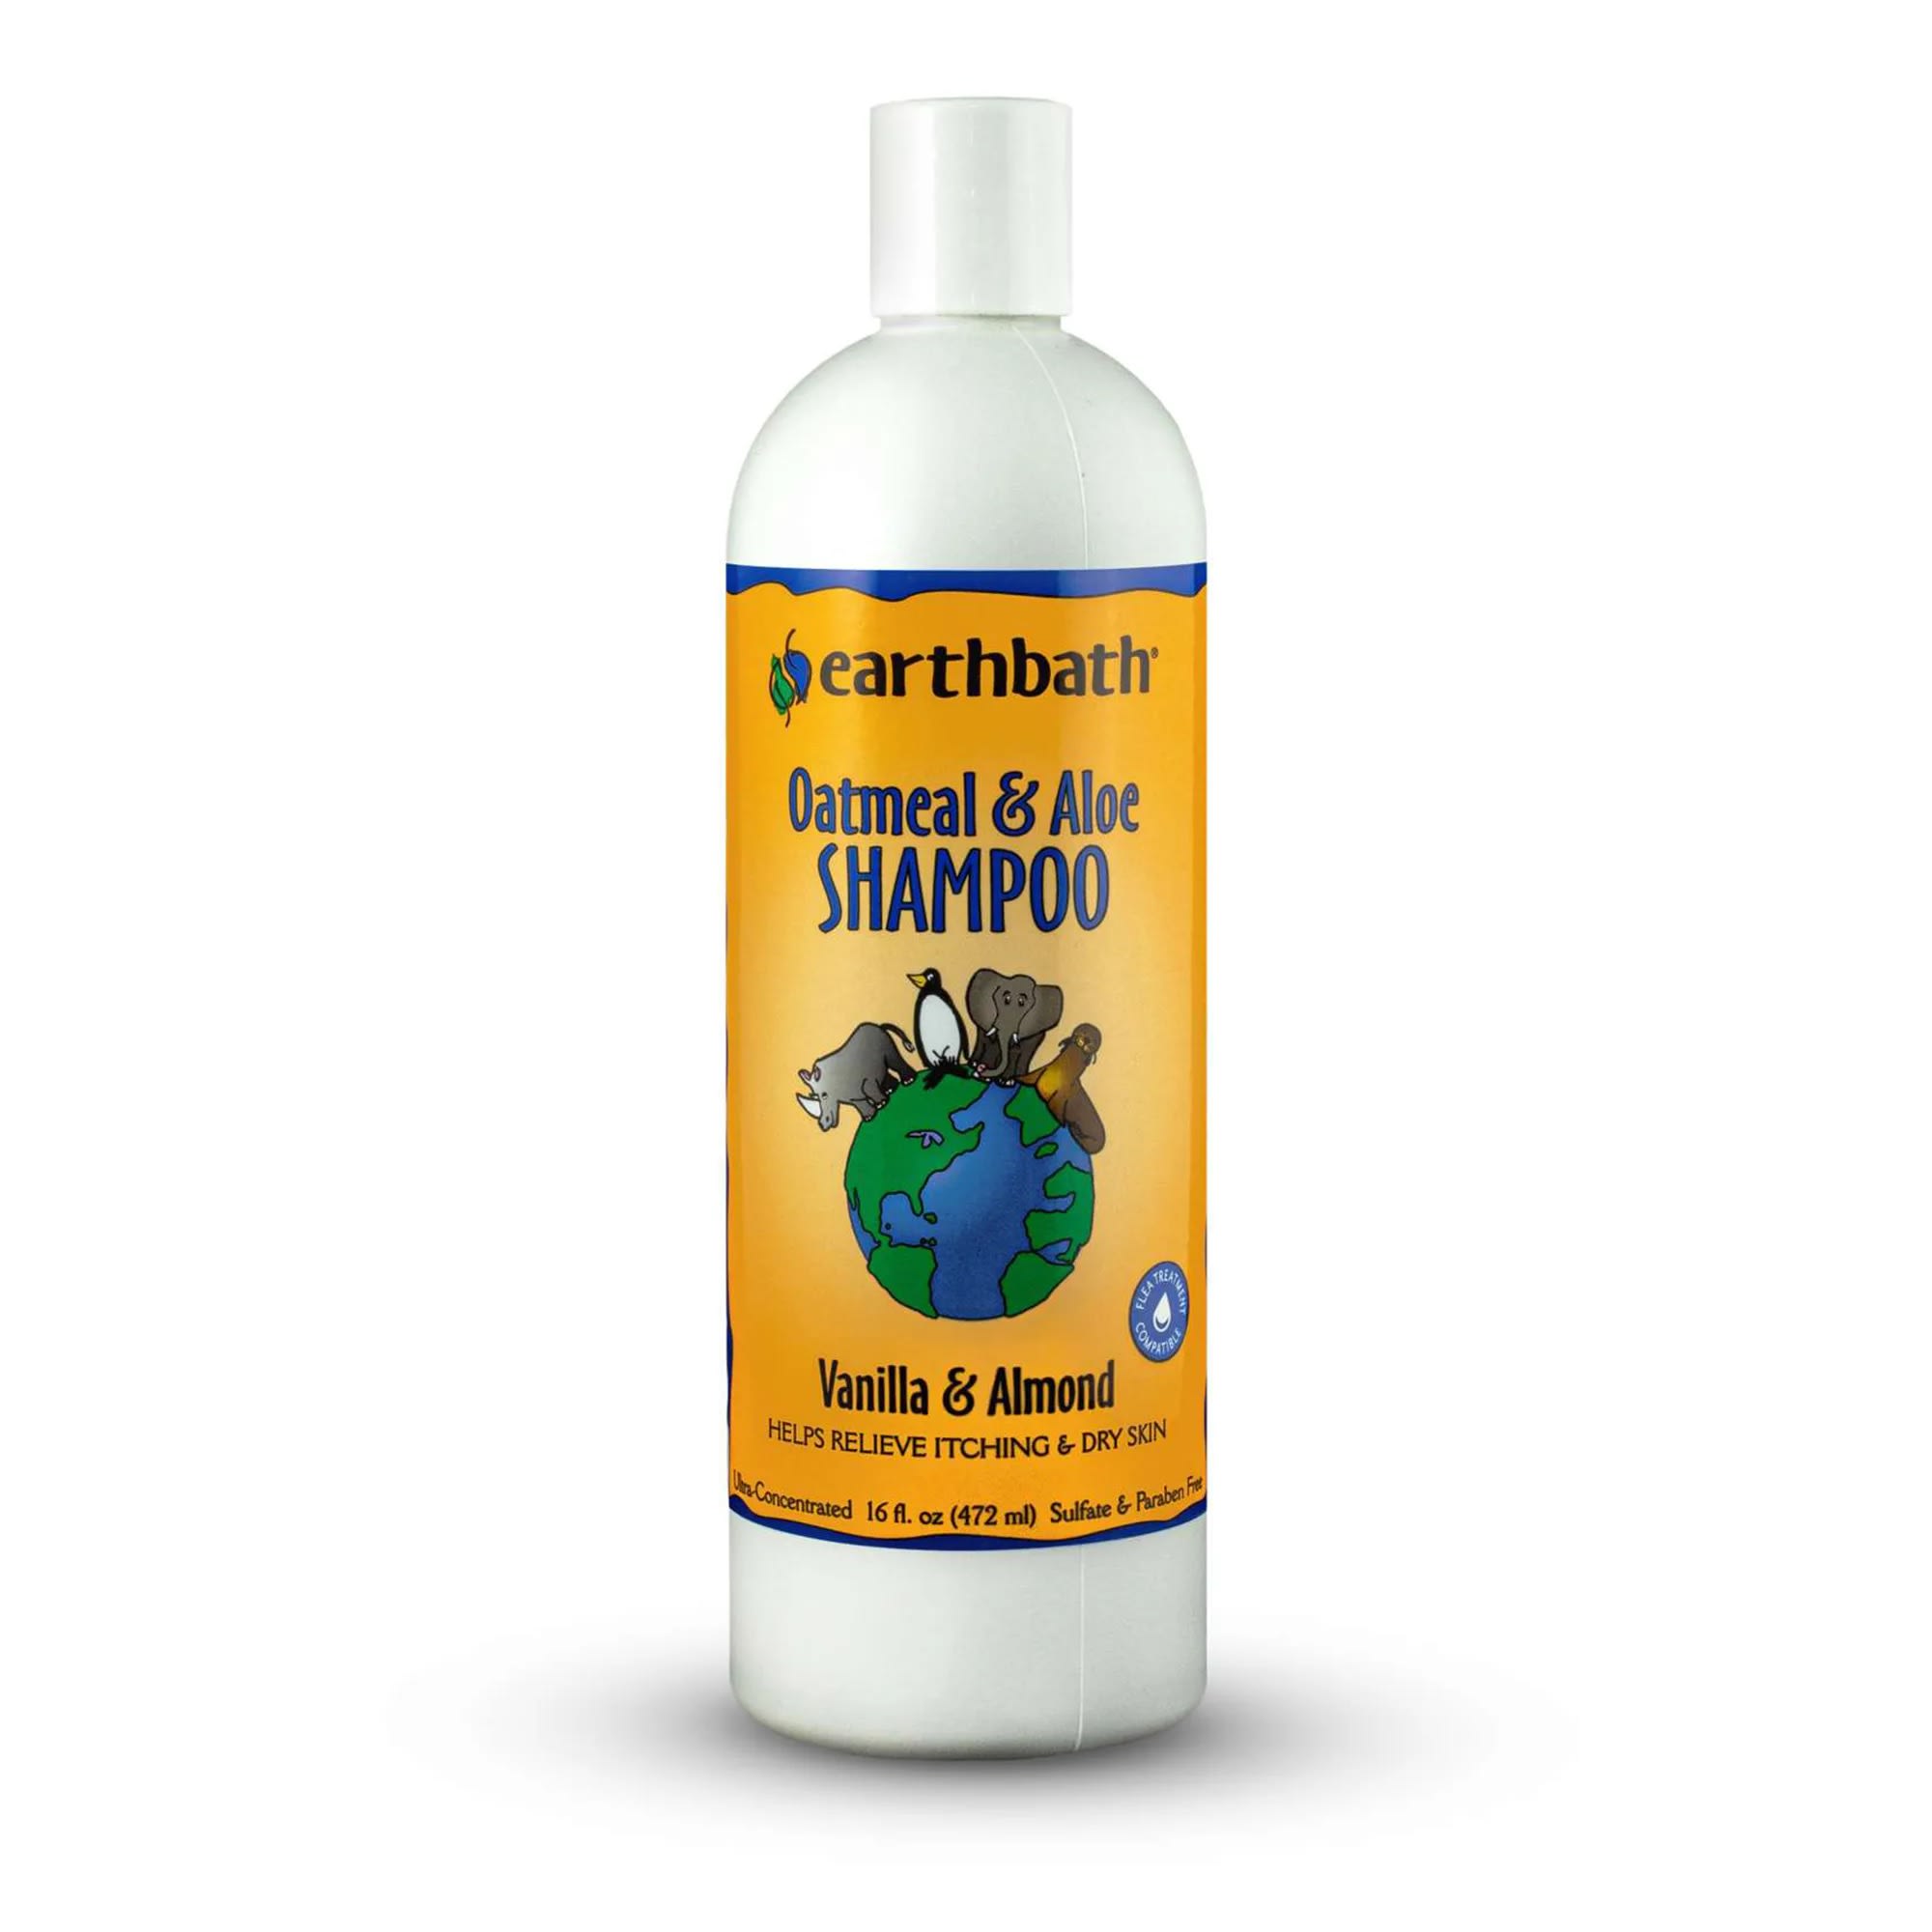 Earthbath Oatmeal & Aloe Shampoo 472ml